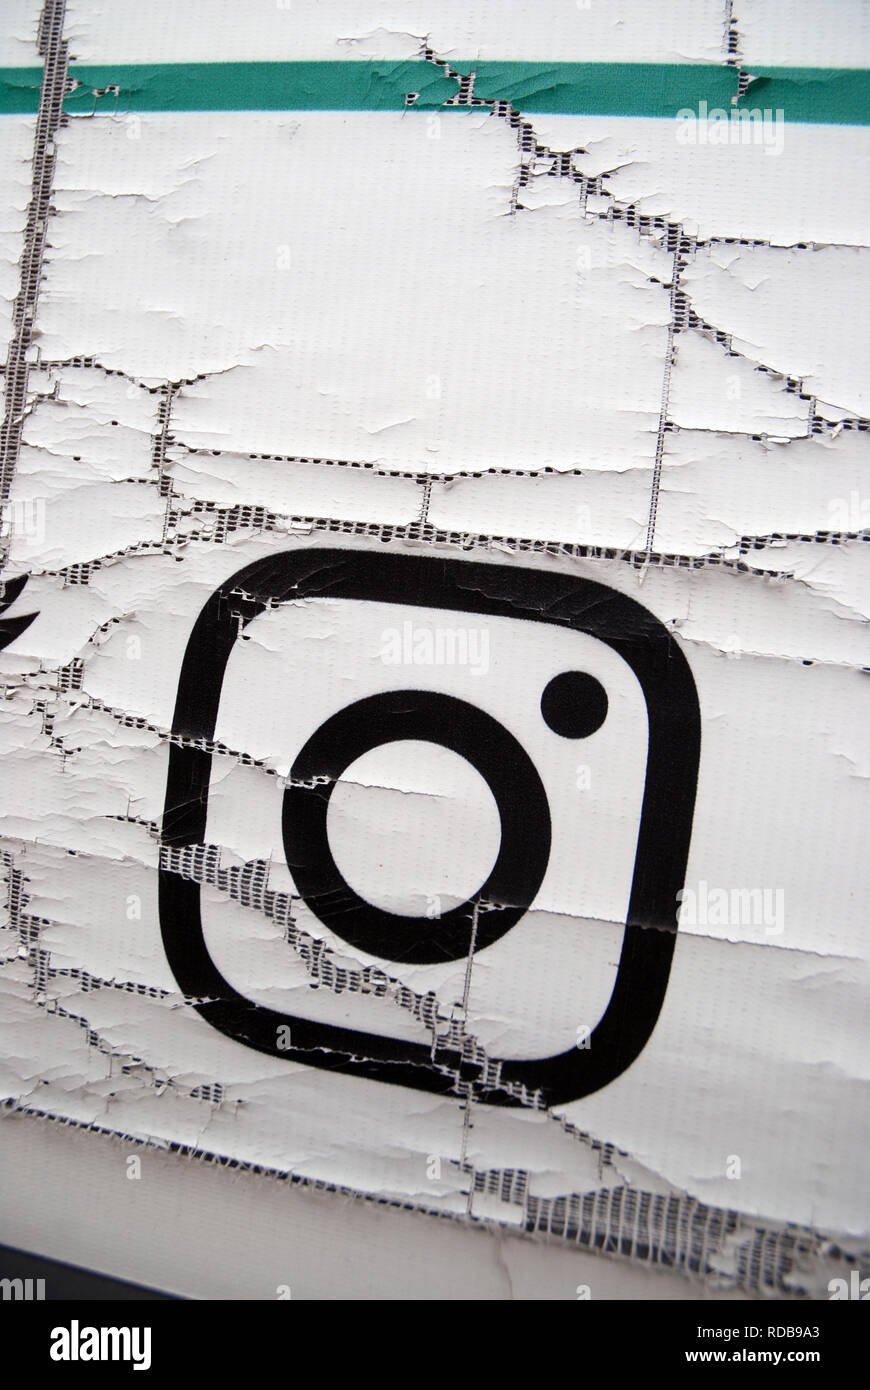 Ancienne affiche de Logo Instagram, Portsmouth, Royaume-Uni. Banque D'Images